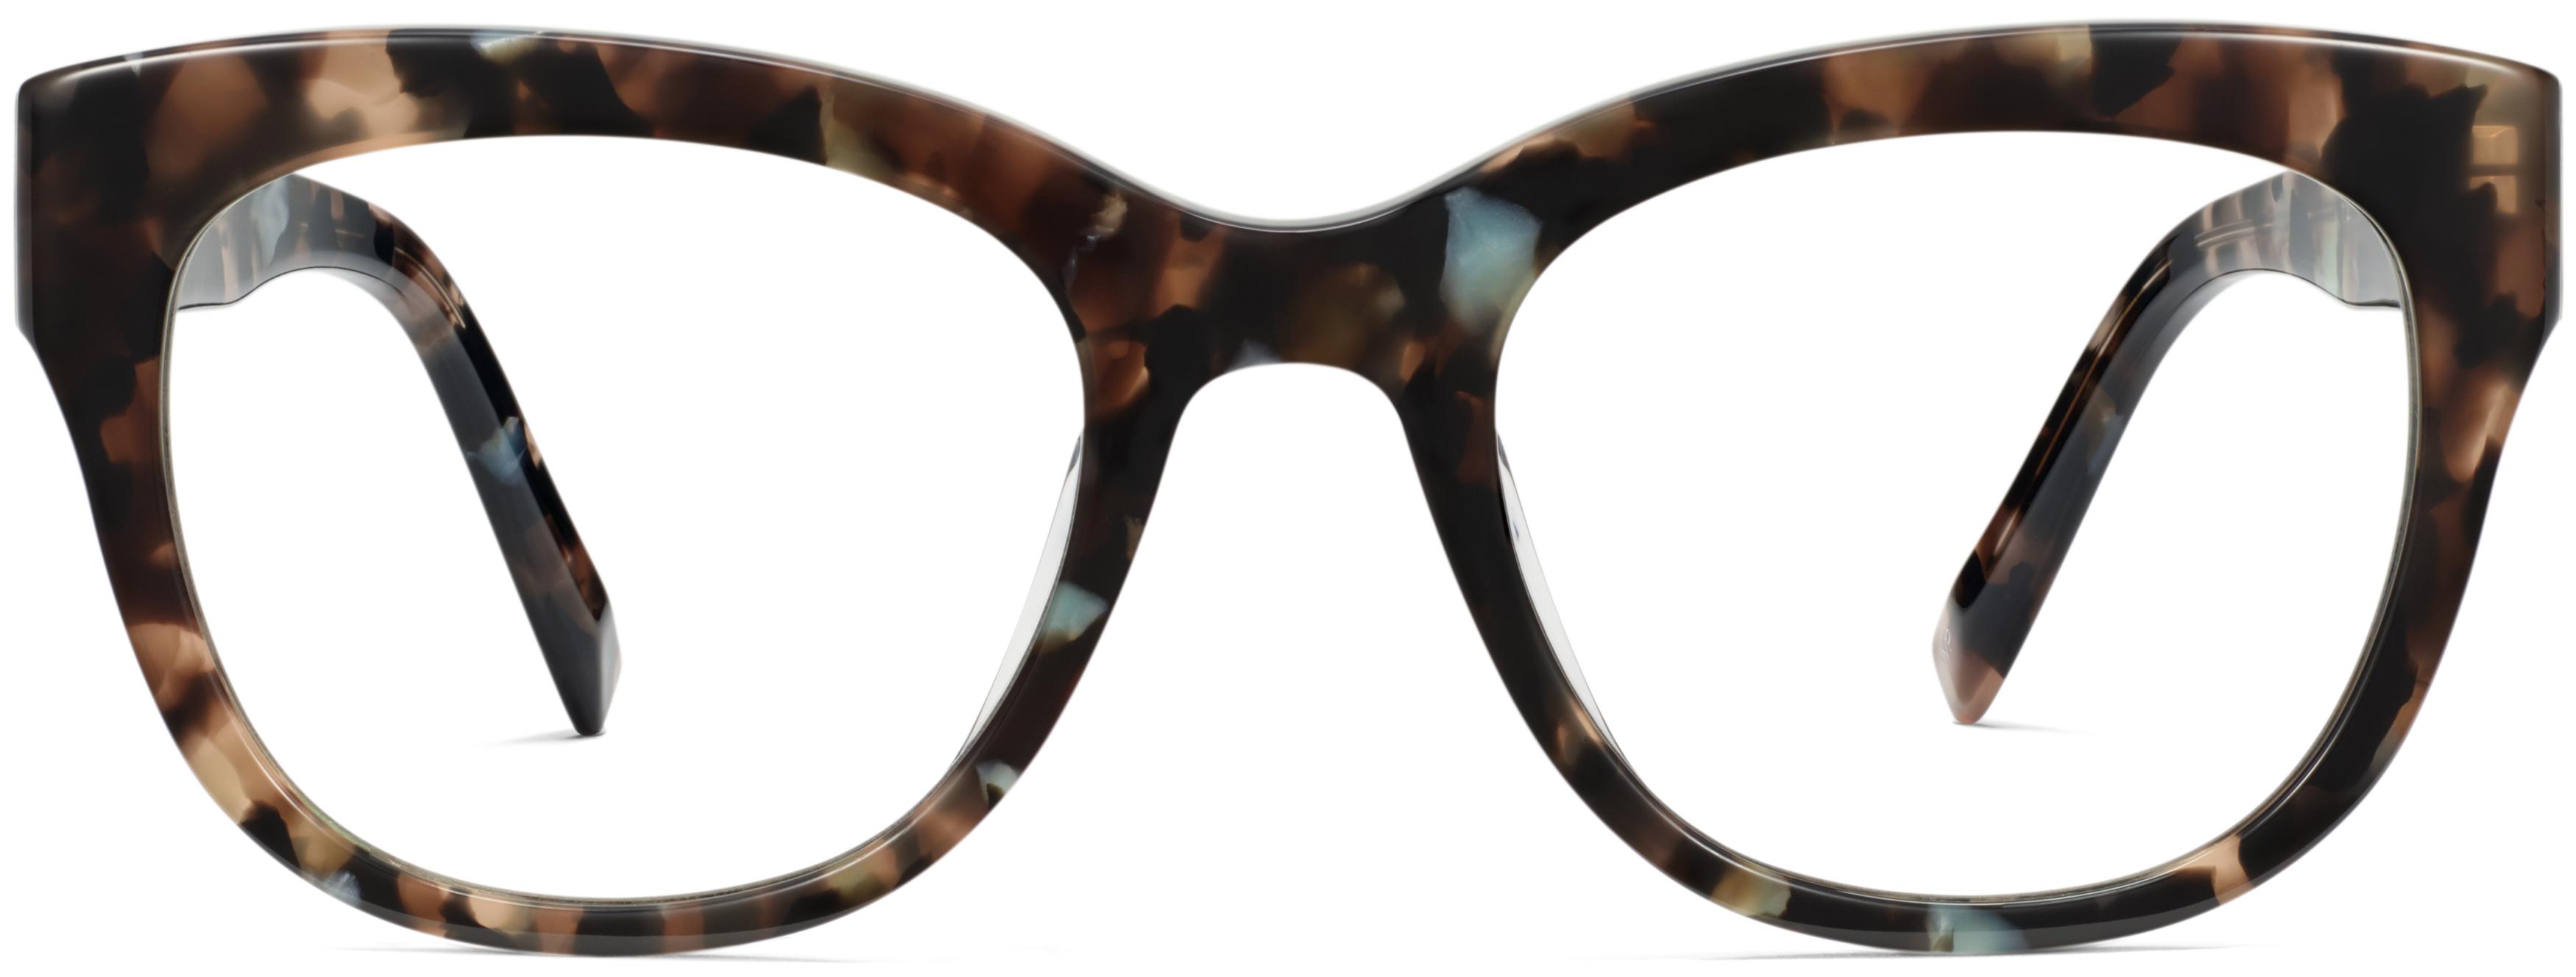 Tatum Low Bridge Fit Eyeglasses in Smoky Pearl Tortoise